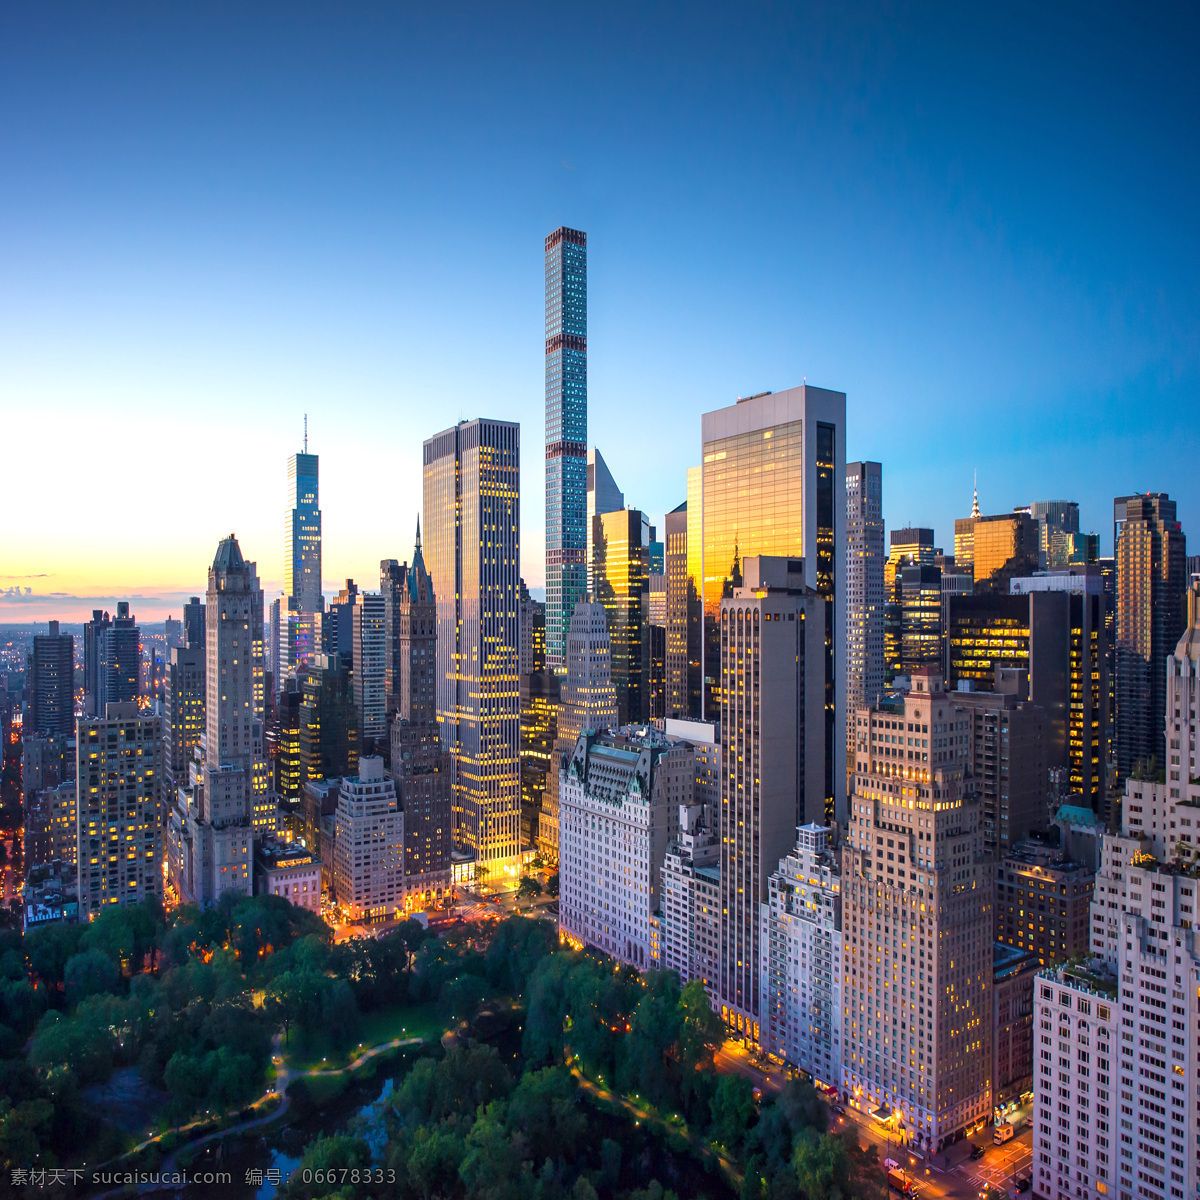 曼哈顿建筑群 城市景至 曼哈顿 城市风景 黎明的城市 夜幕中的城市 景观与建筑 建筑园林 建筑摄影